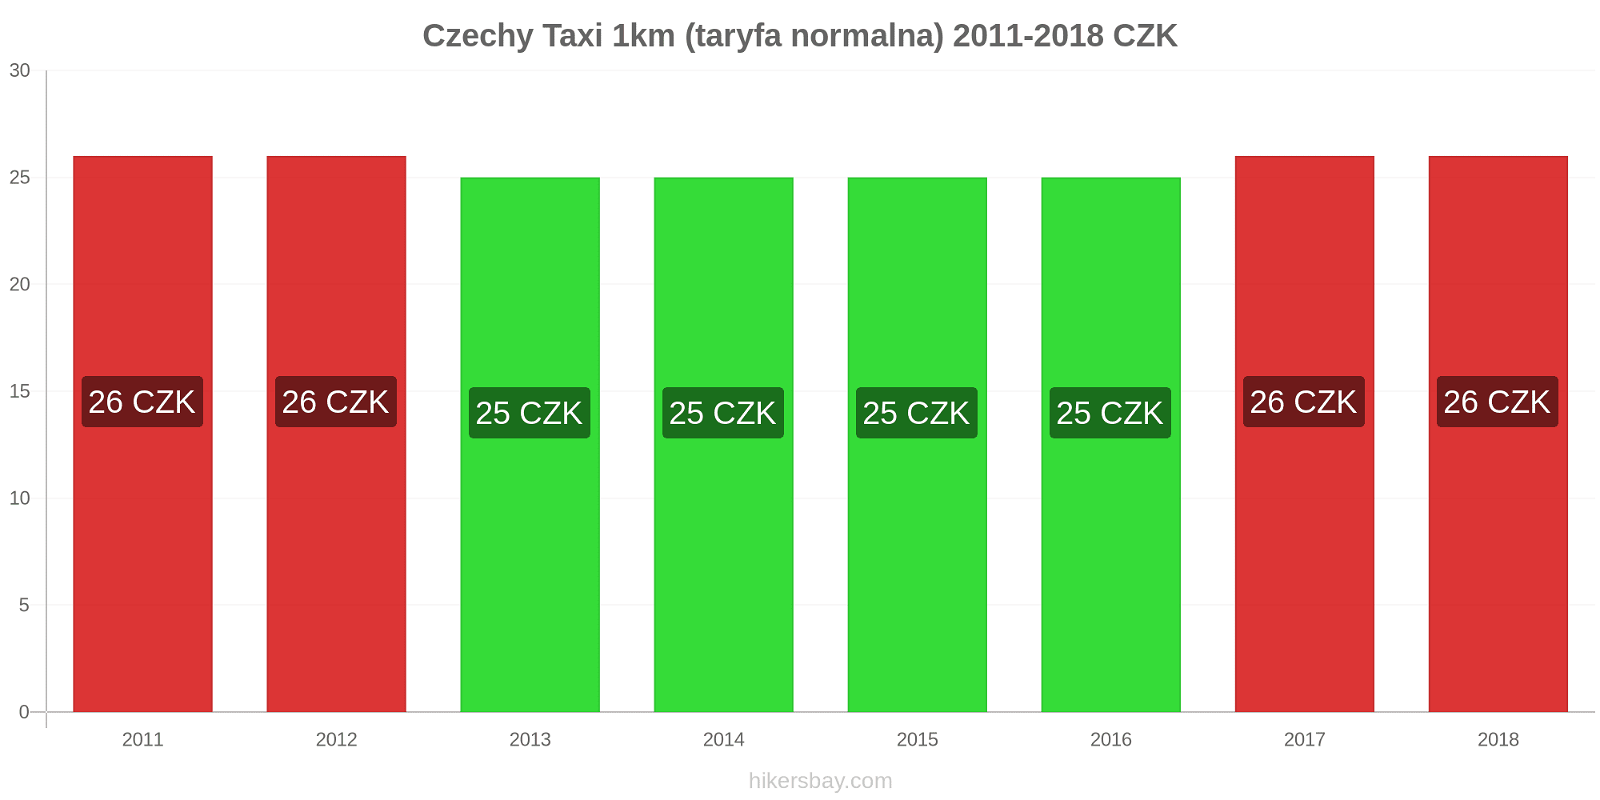 Czechy zmiany cen Taxi 1km (taryfa normalna) hikersbay.com